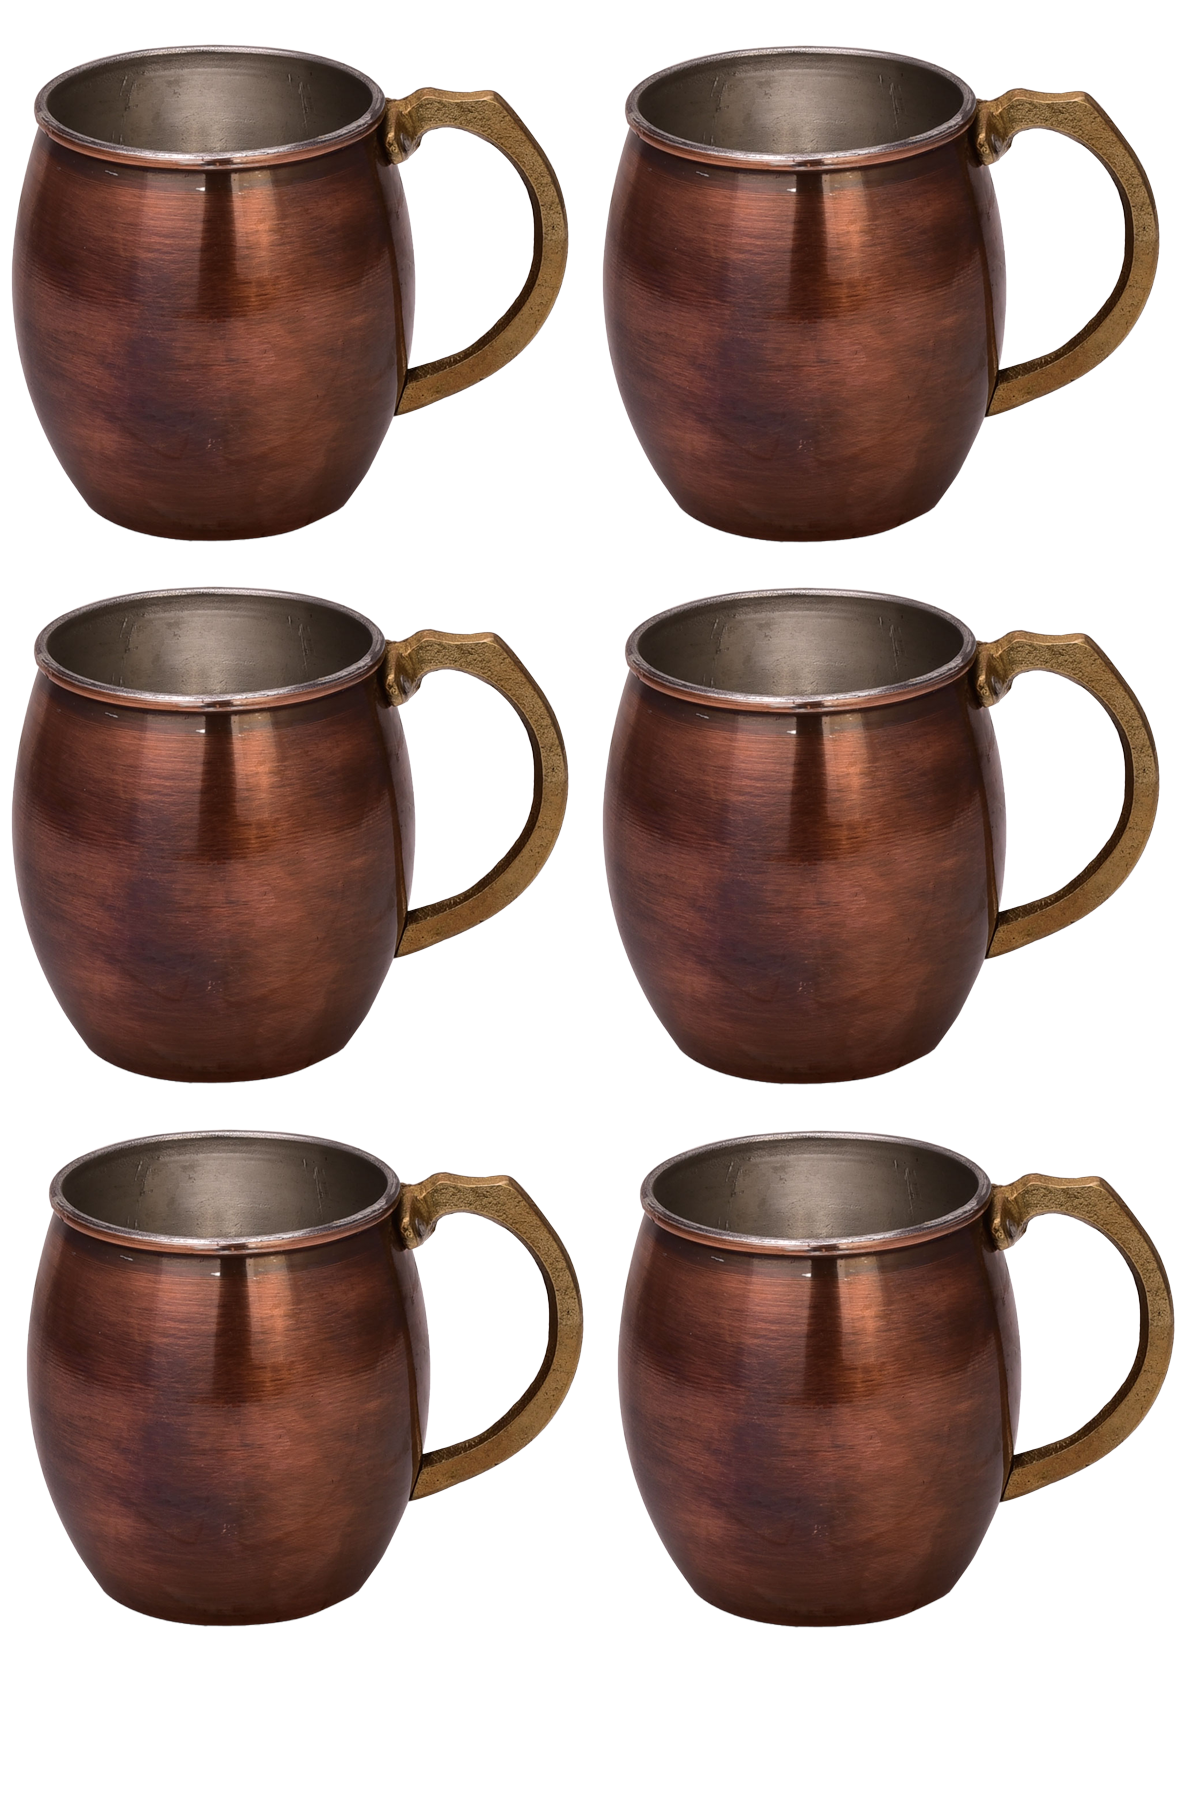 Copper Mug Set of 6 Oxide